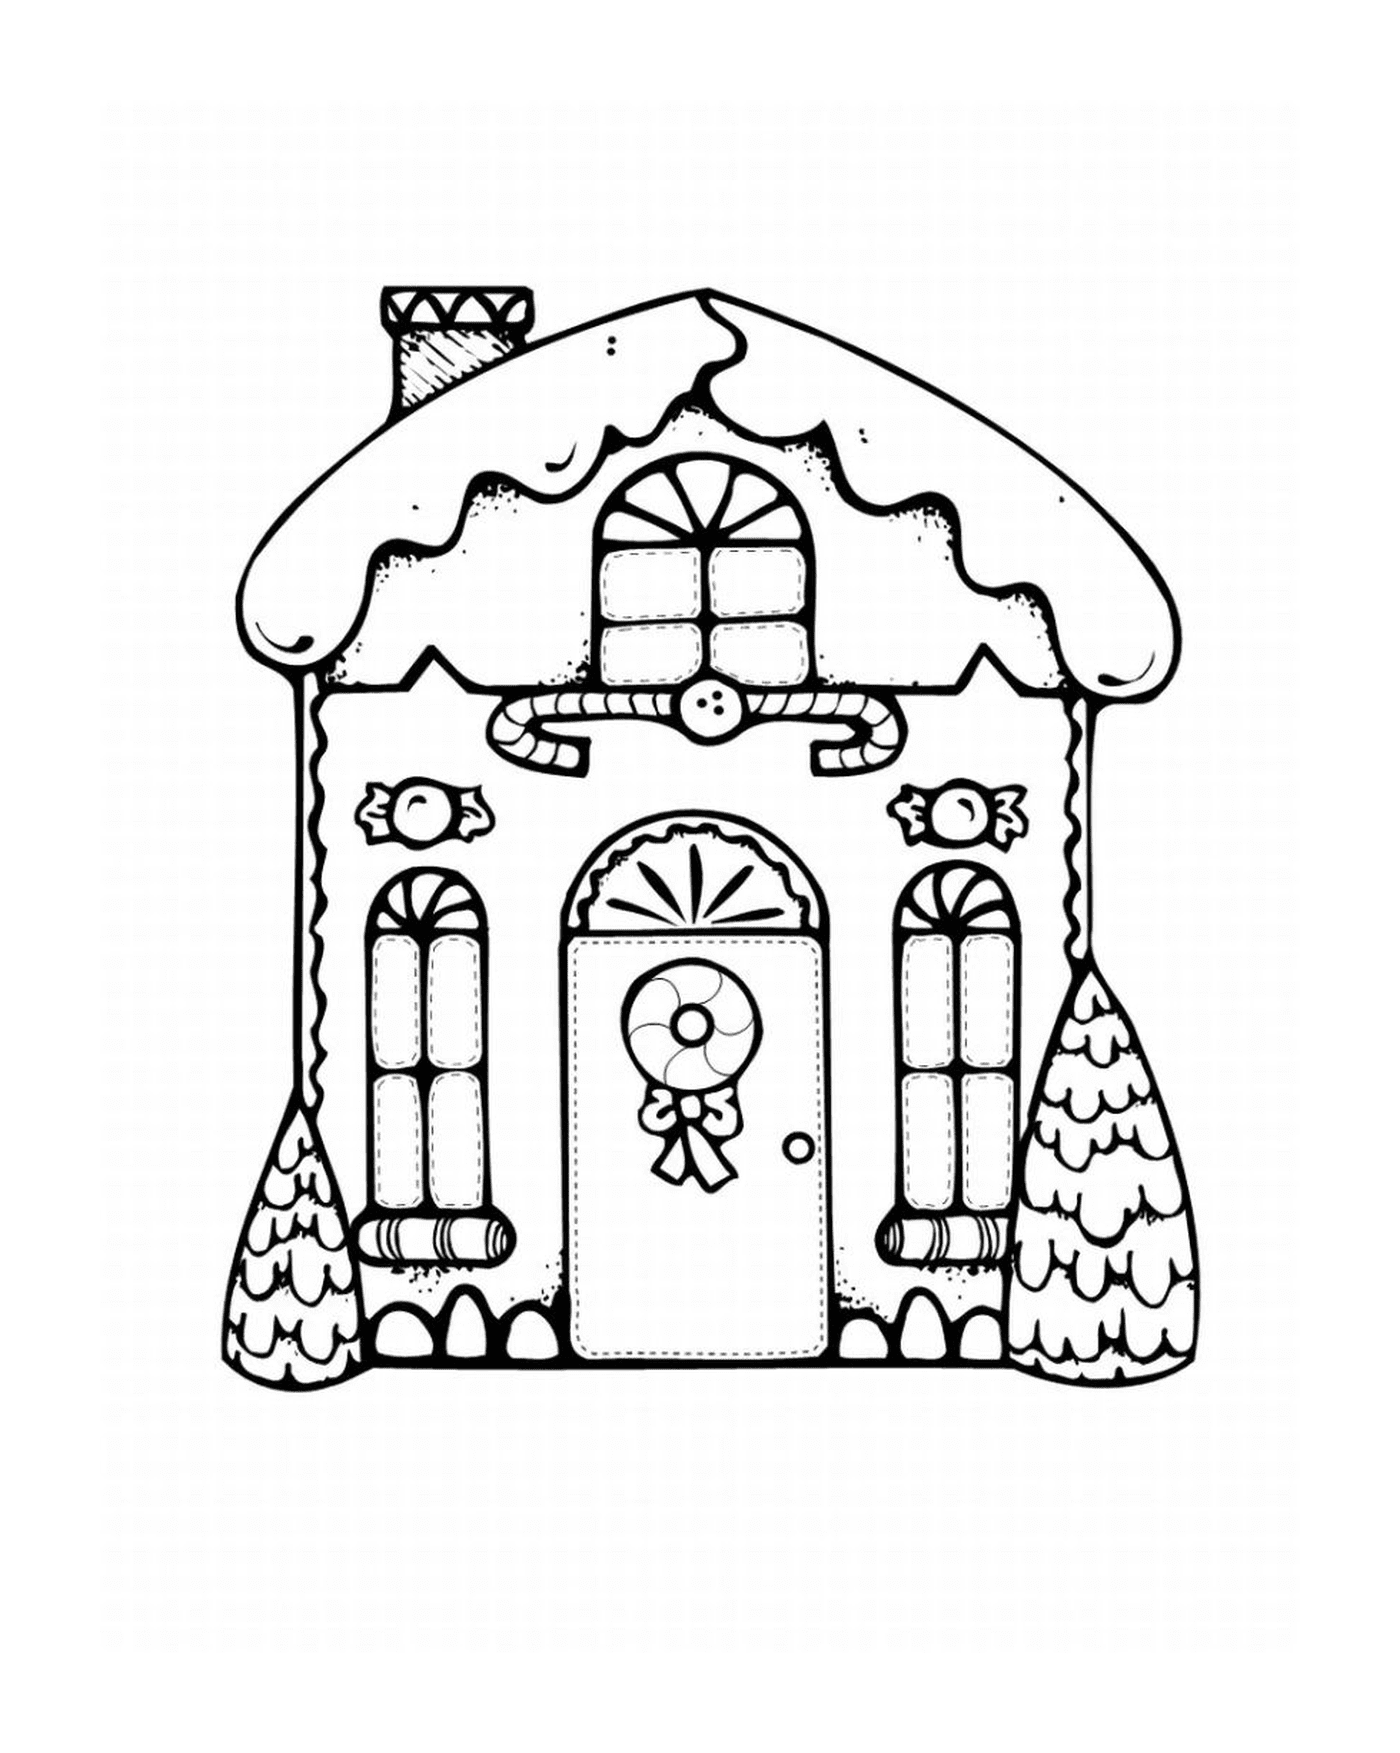   maison décorée Noël festive 